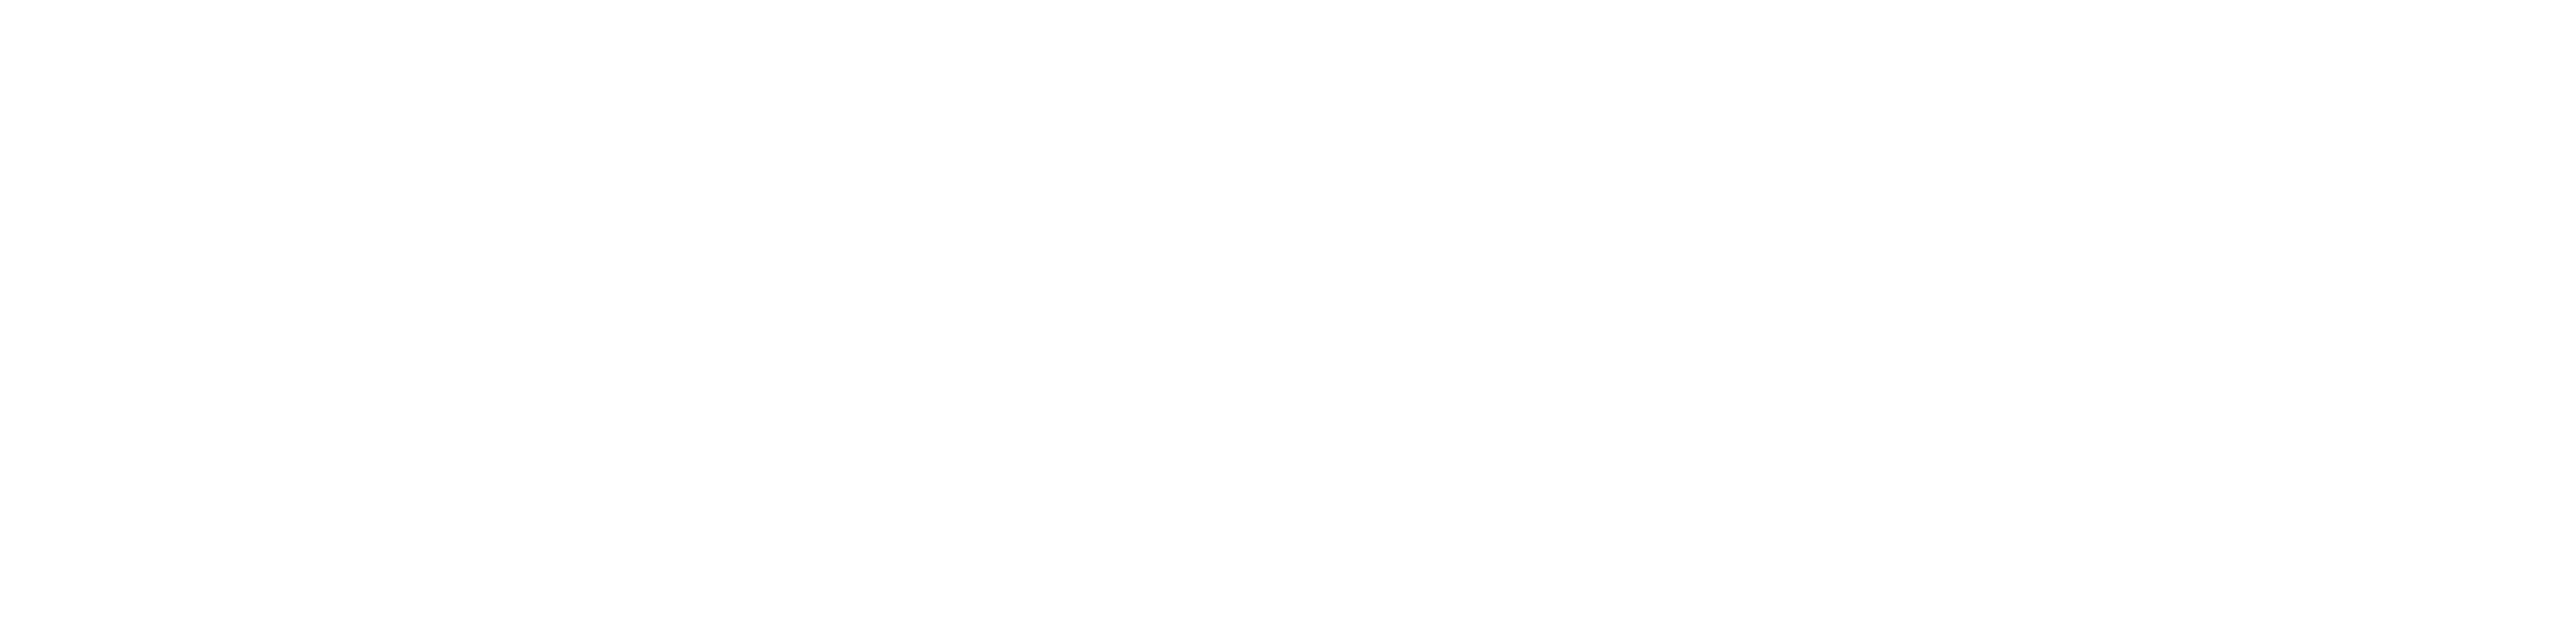 Karlskoga kommuns logotyp